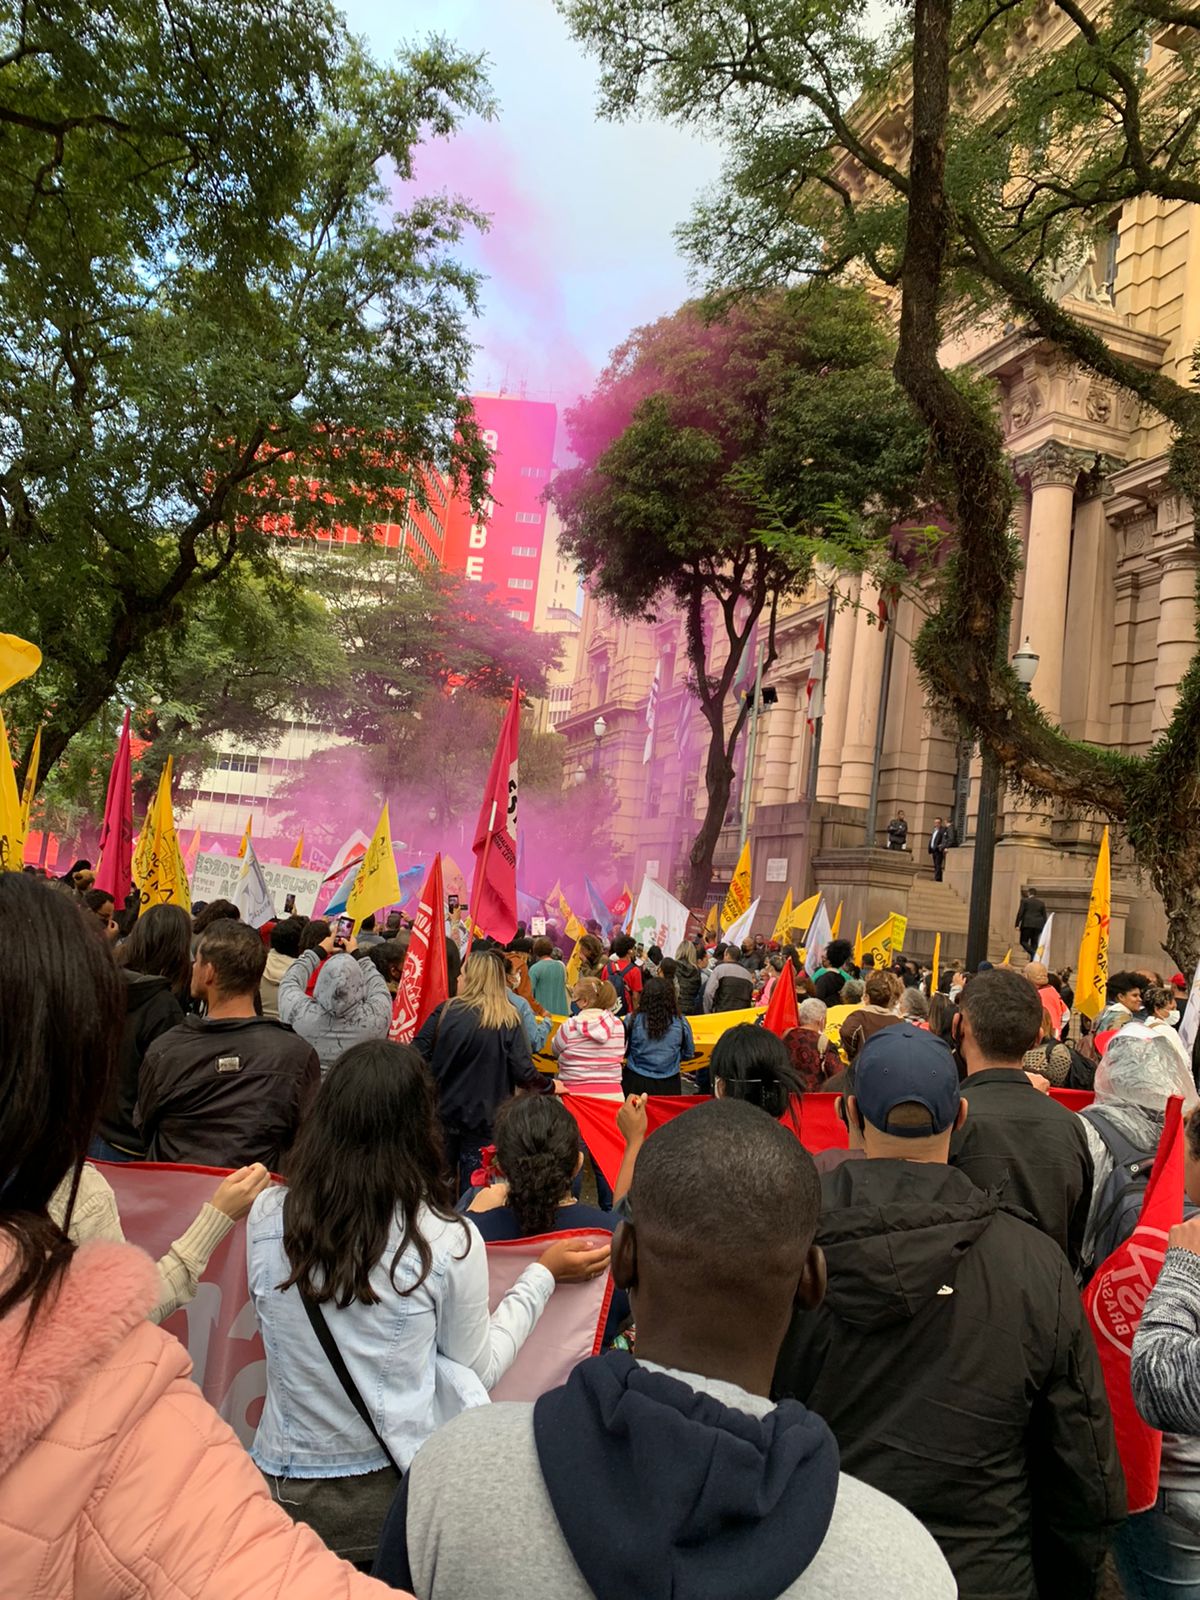 A Conferência Popular pelo Direito à Cidade foi iniciada com uma marcha pelas ruas do centro de São Paulo em defesa do direito à cidade e à moradia.